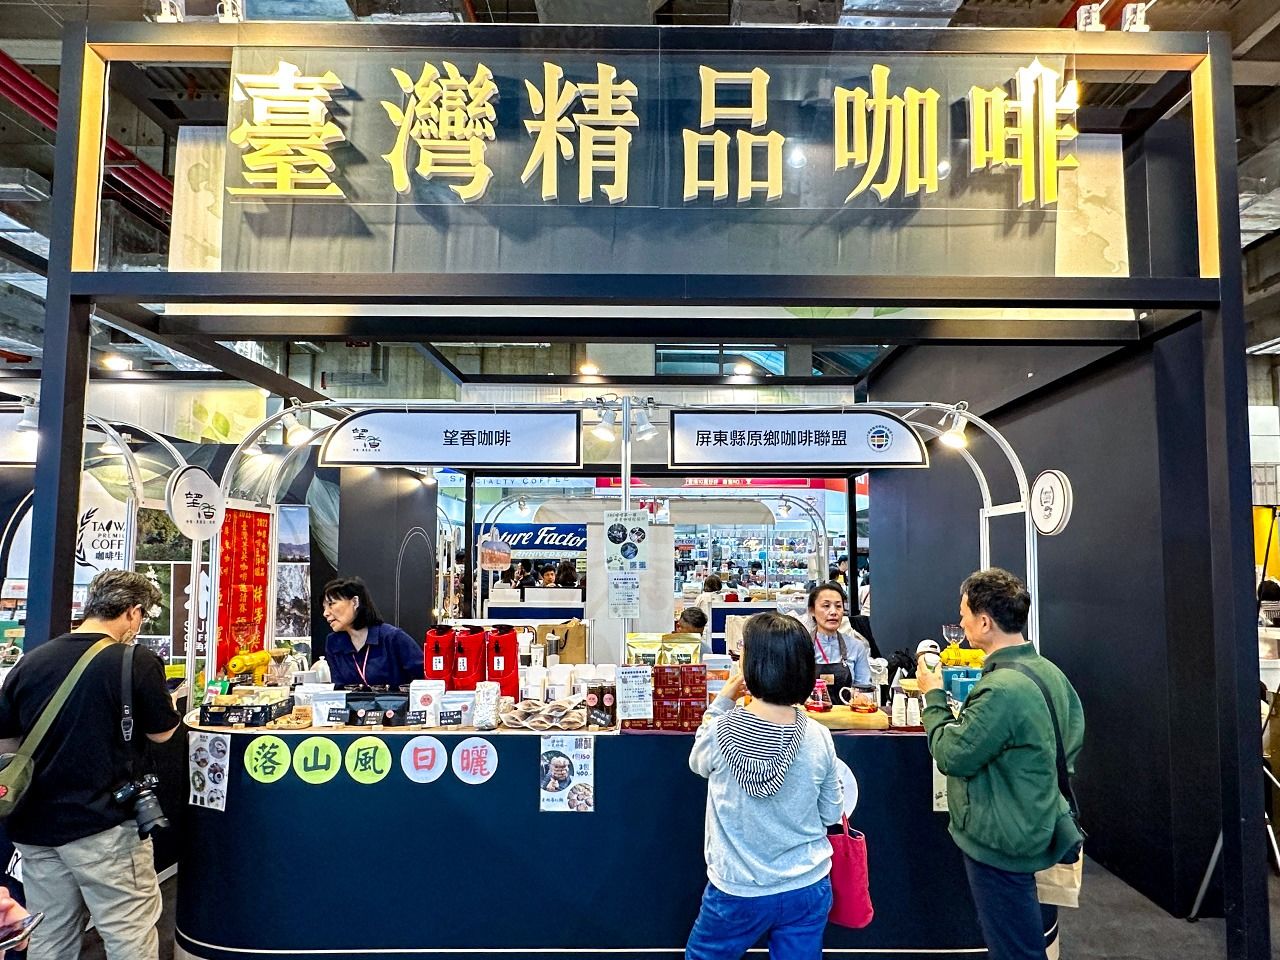 提供臺灣精品咖啡的攤位。